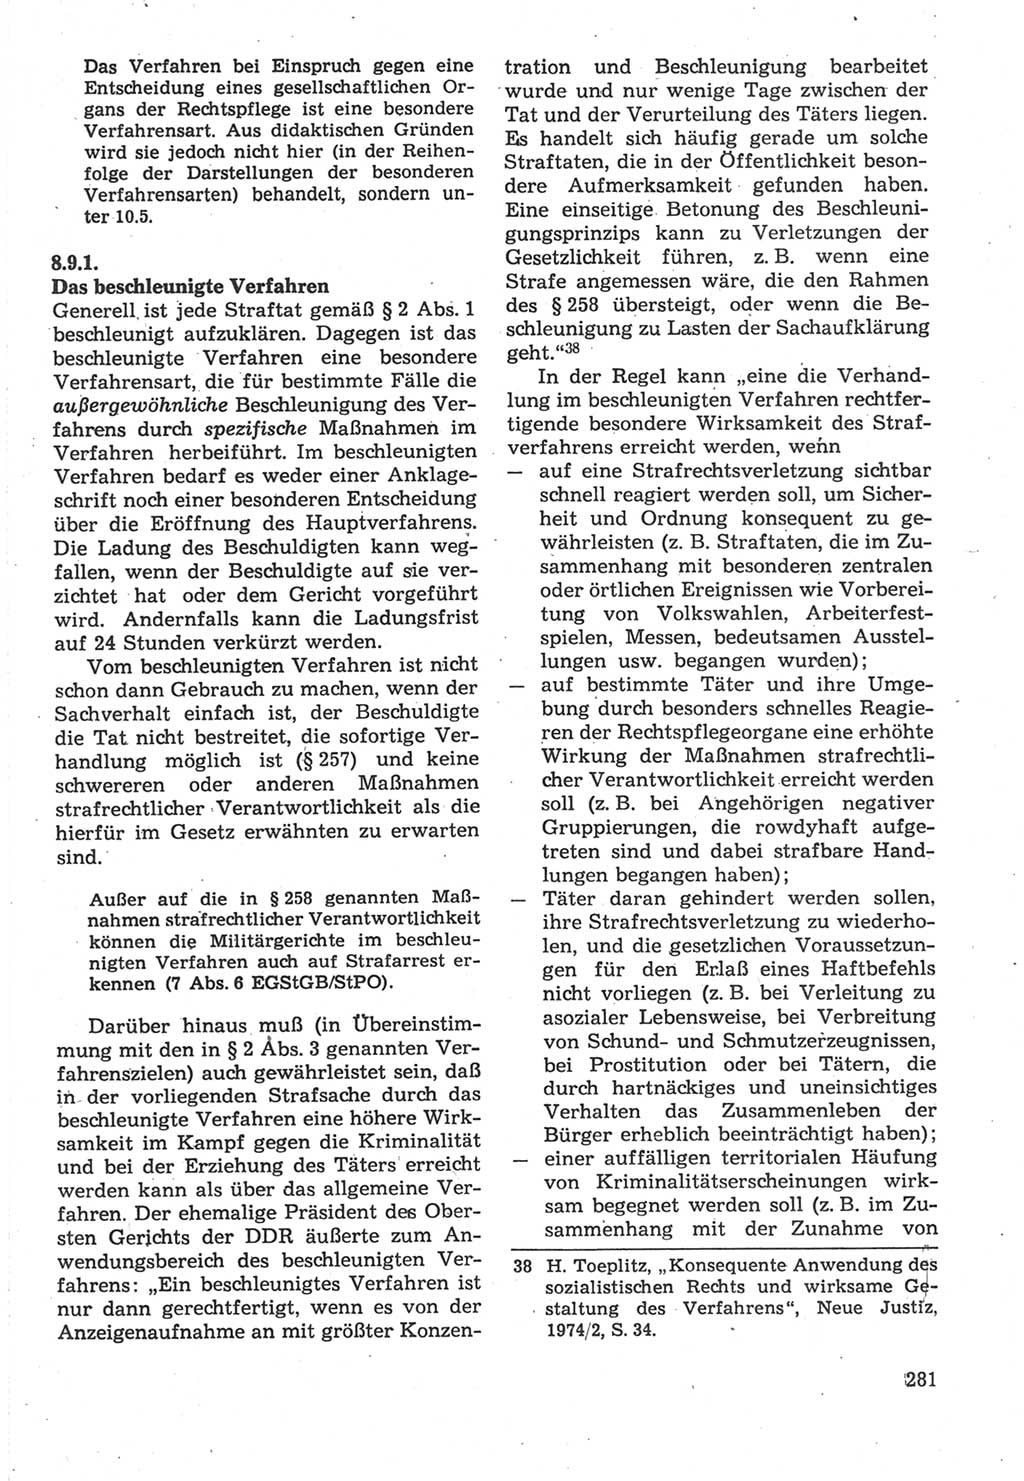 Strafverfahrensrecht [Deutsche Demokratische Republik (DDR)], Lehrbuch 1987, Seite 281 (Strafverf.-R. DDR Lb. 1987, S. 281)